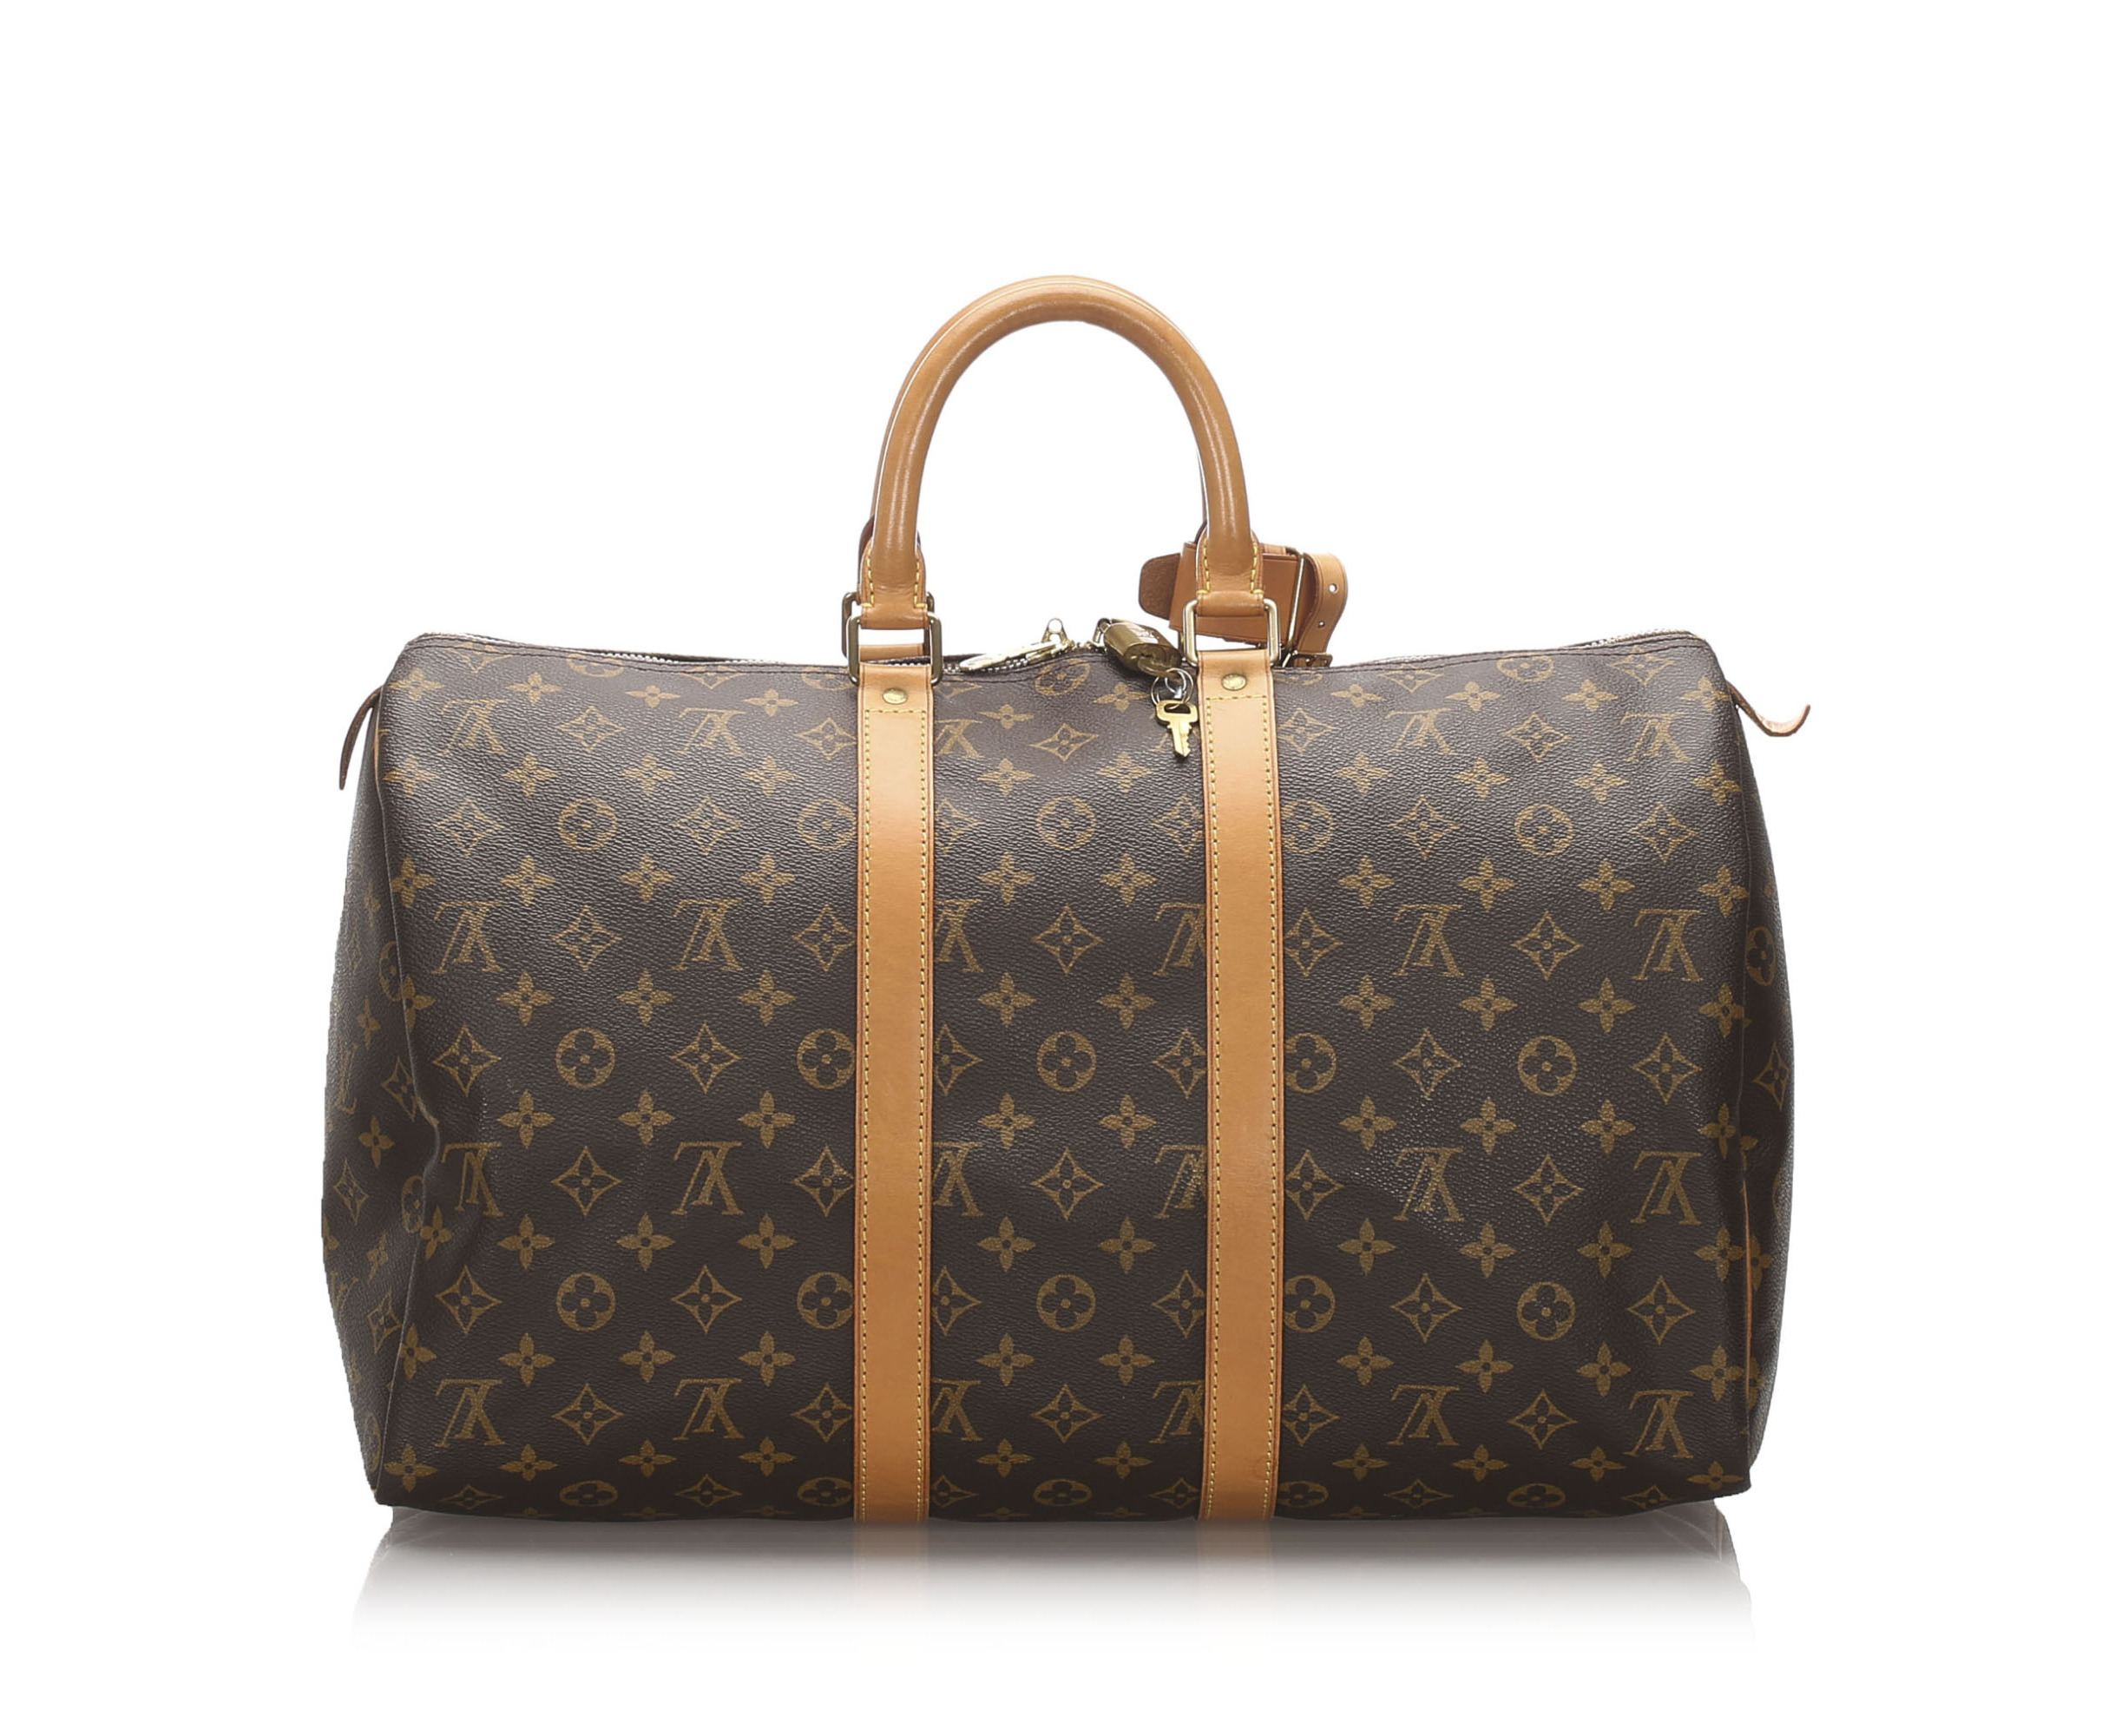 Louis Vuitton airplane bag